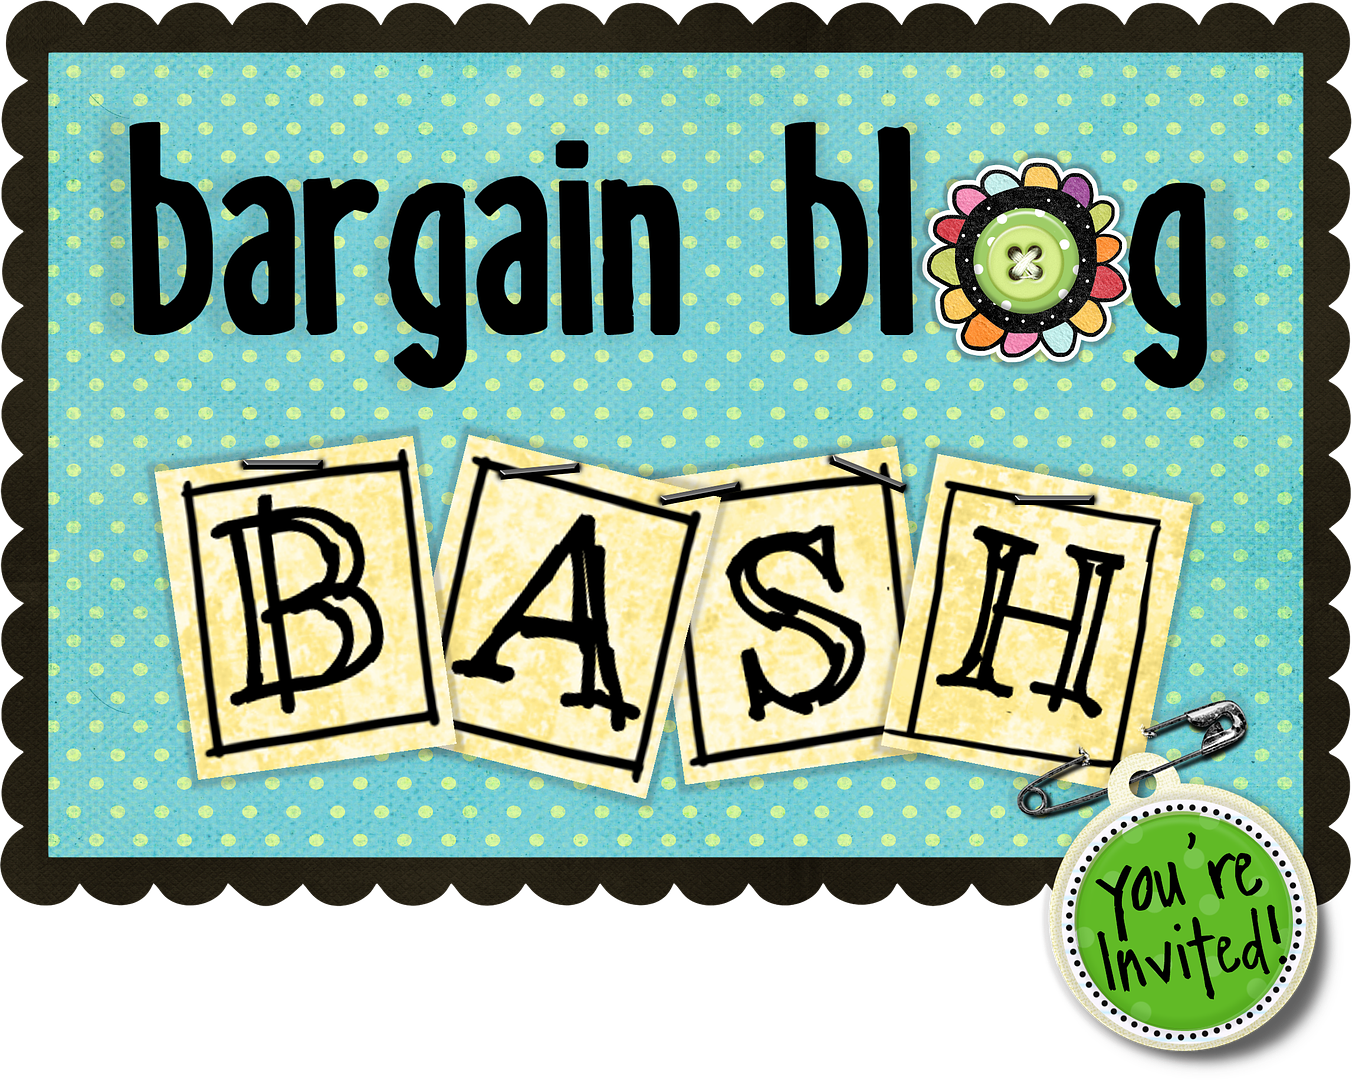 Bargain Blog Bash